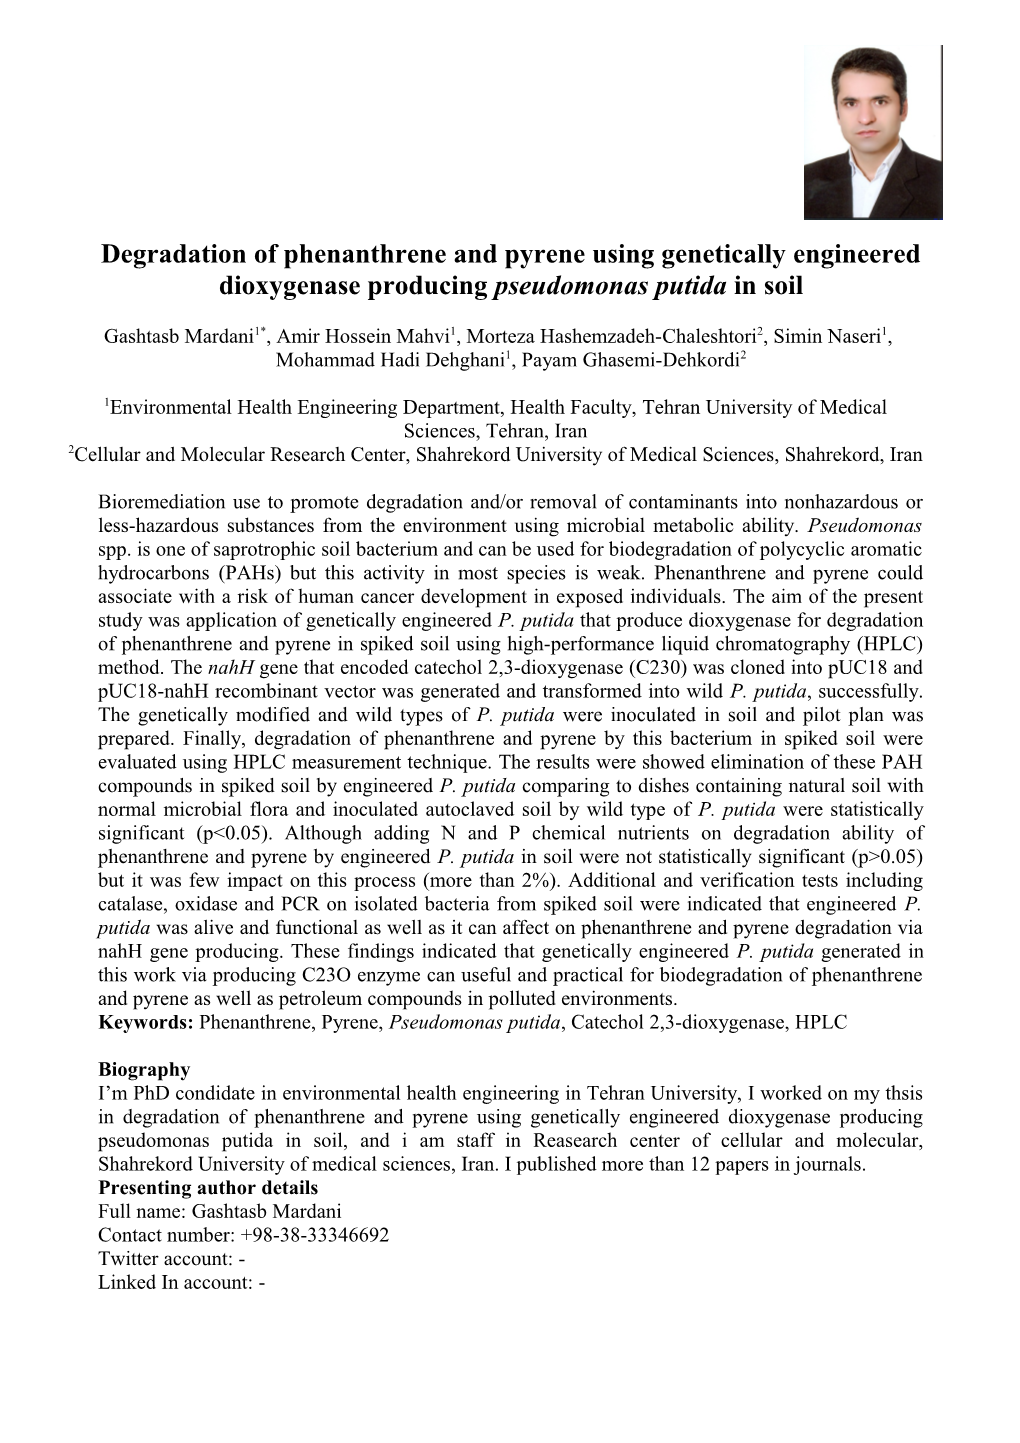 Degradation of Phenanthrene and Pyrene Using Genetically Engineered Dioxygenase Producing